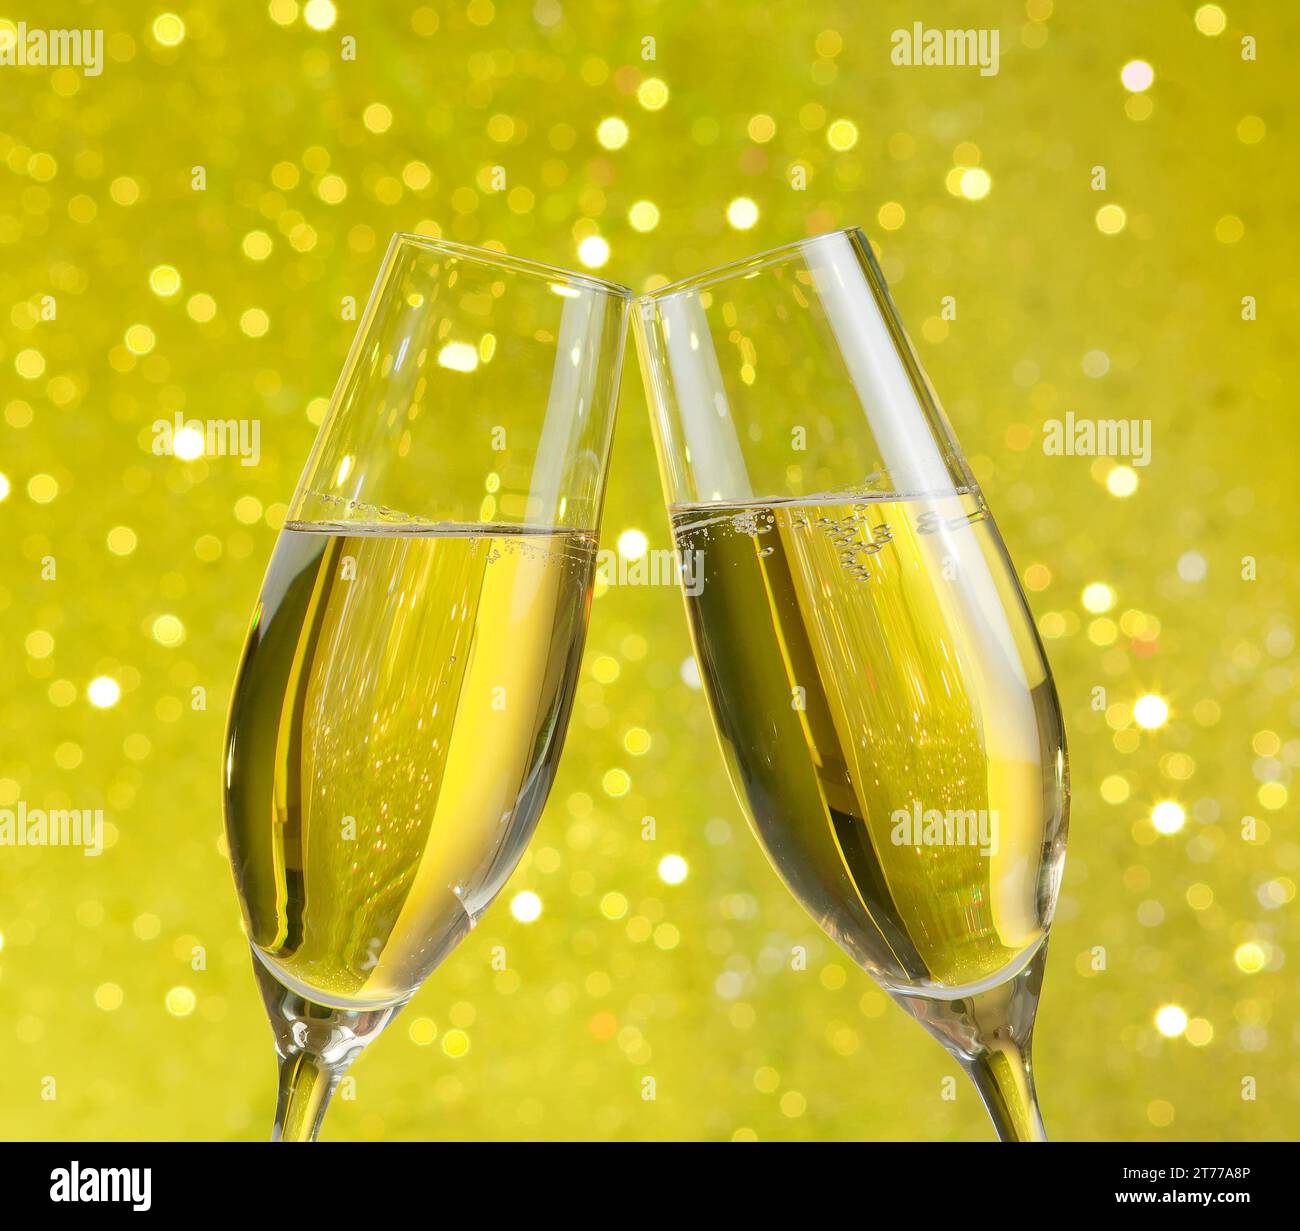 due flute di champagne con bolle d'oro fanno il tifo su sfondo giallo chiaro bokeh Foto Stock